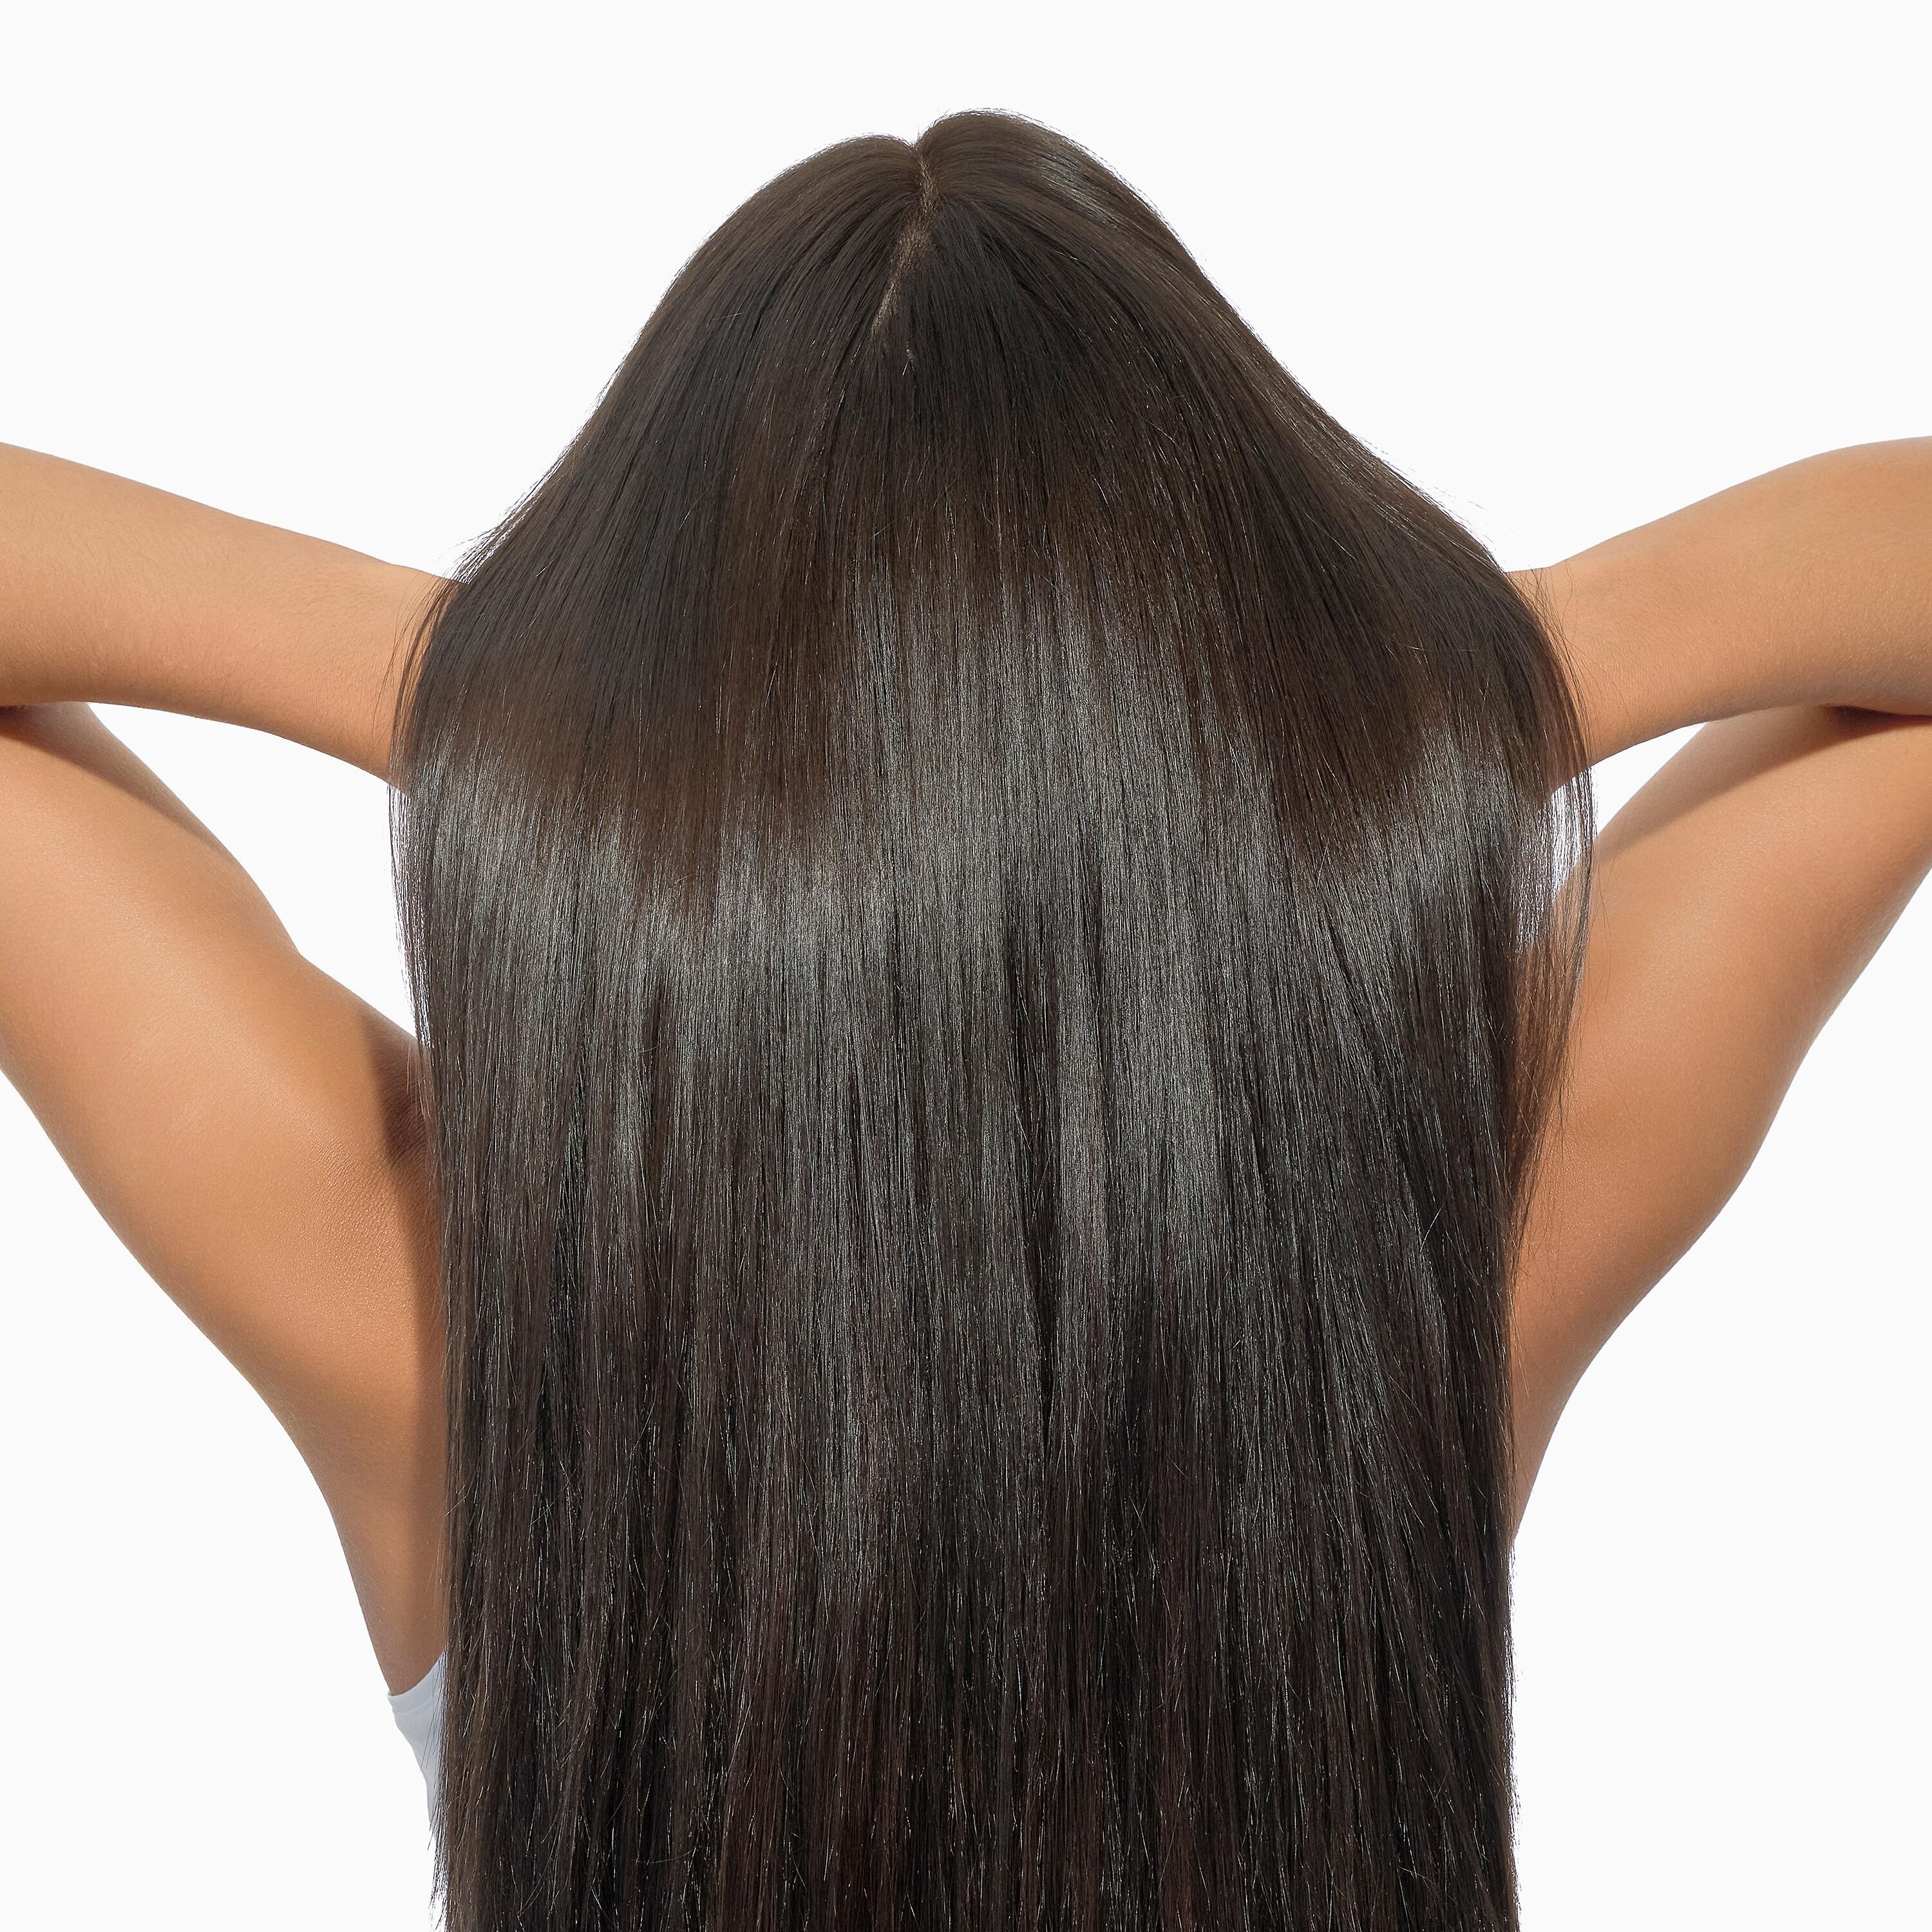 Rehidrata tu cabello desde el corazón de la fibra y restaura su brillo natural